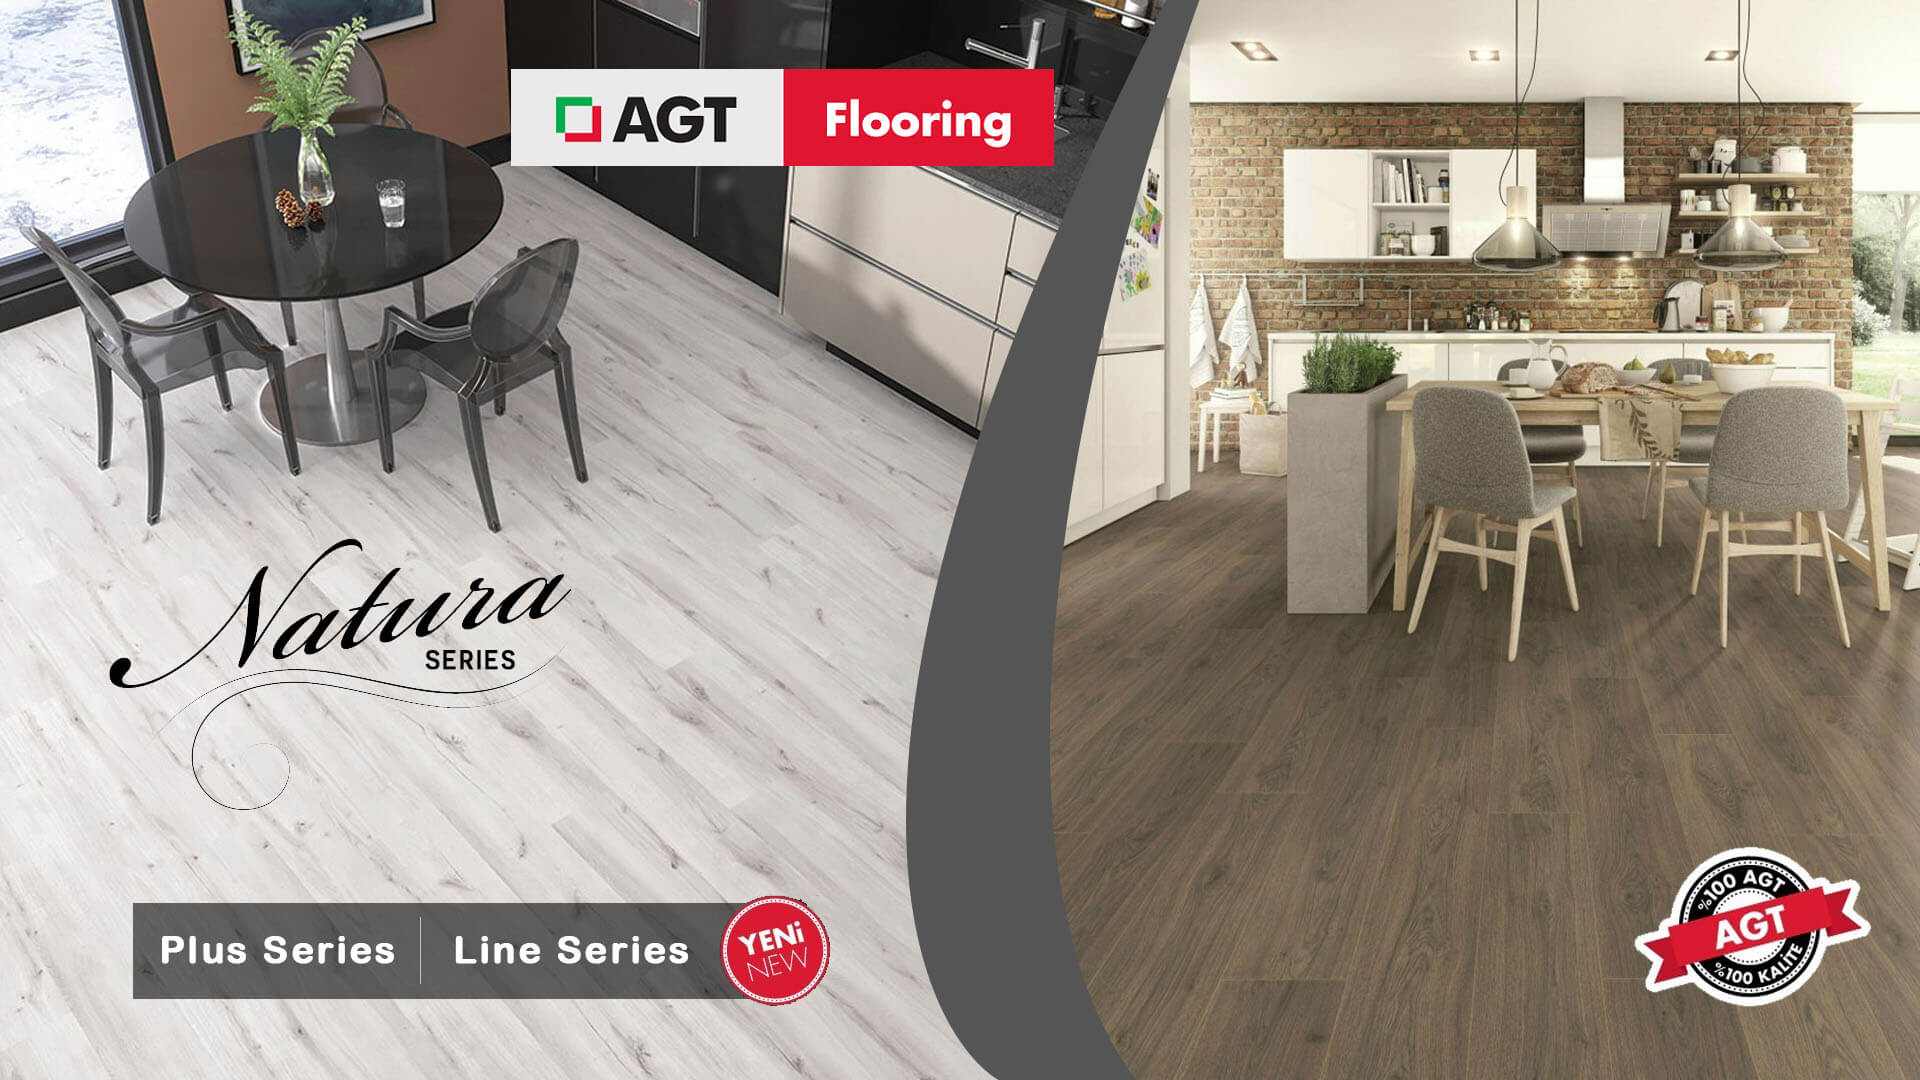 Sàn gỗ AGT là một trong những thương hiệu sàn gỗ được ưa chuộng trên thị trường quốc tế